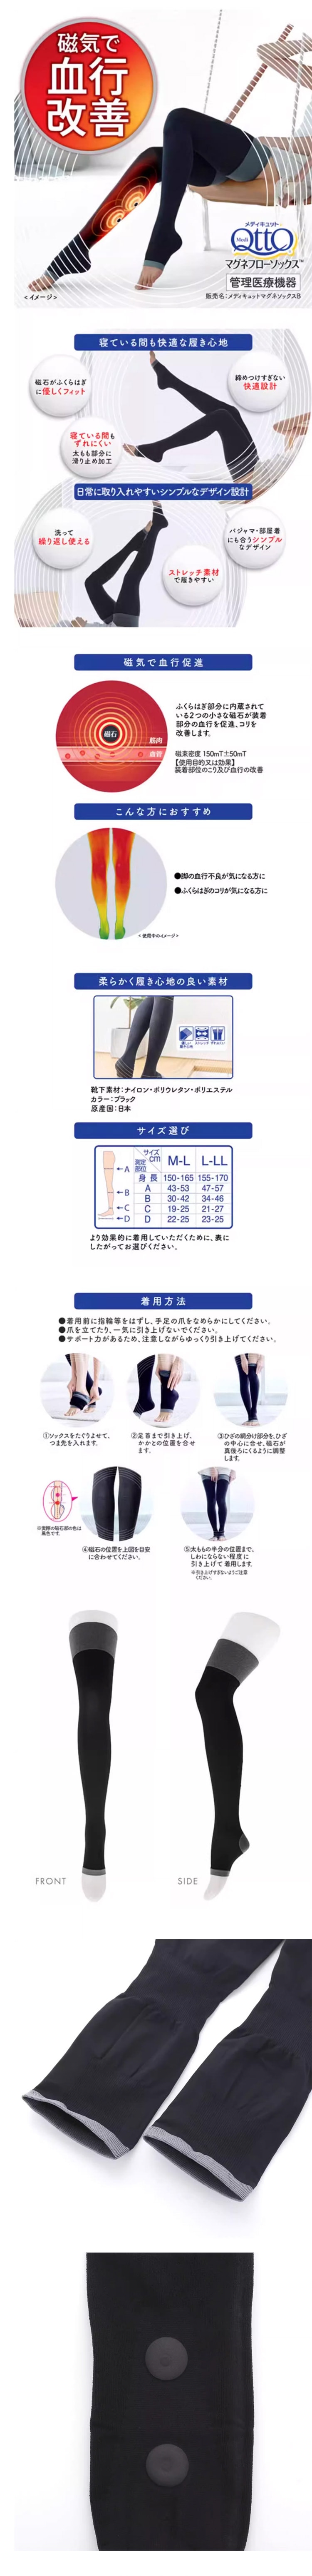 【日本直效郵件】DR SCHOLL 爽健 QTTO 磁石小腿襪 M